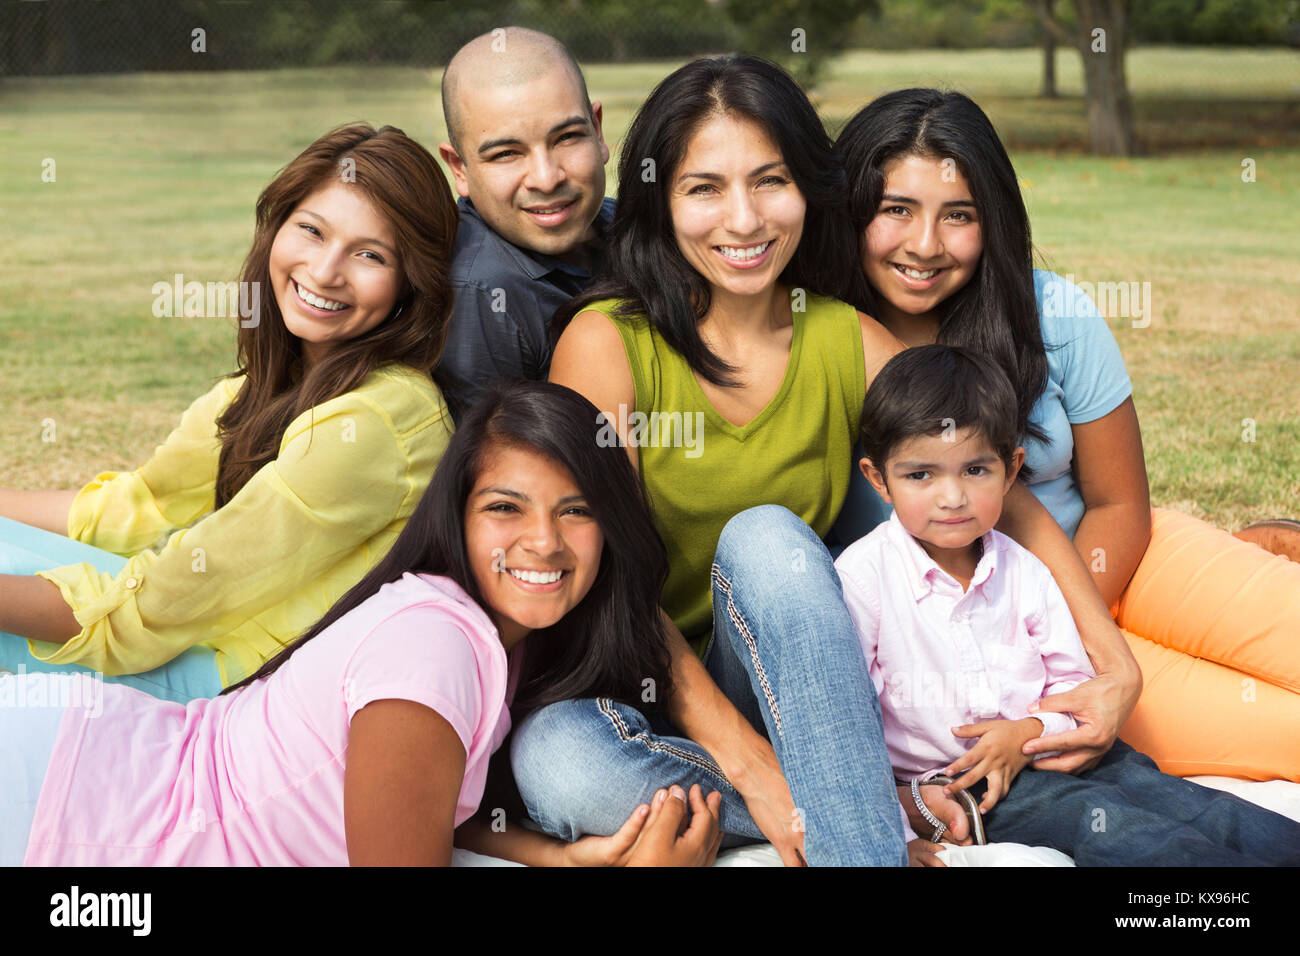 Big Hispanic family smiling outside. Stock Photo